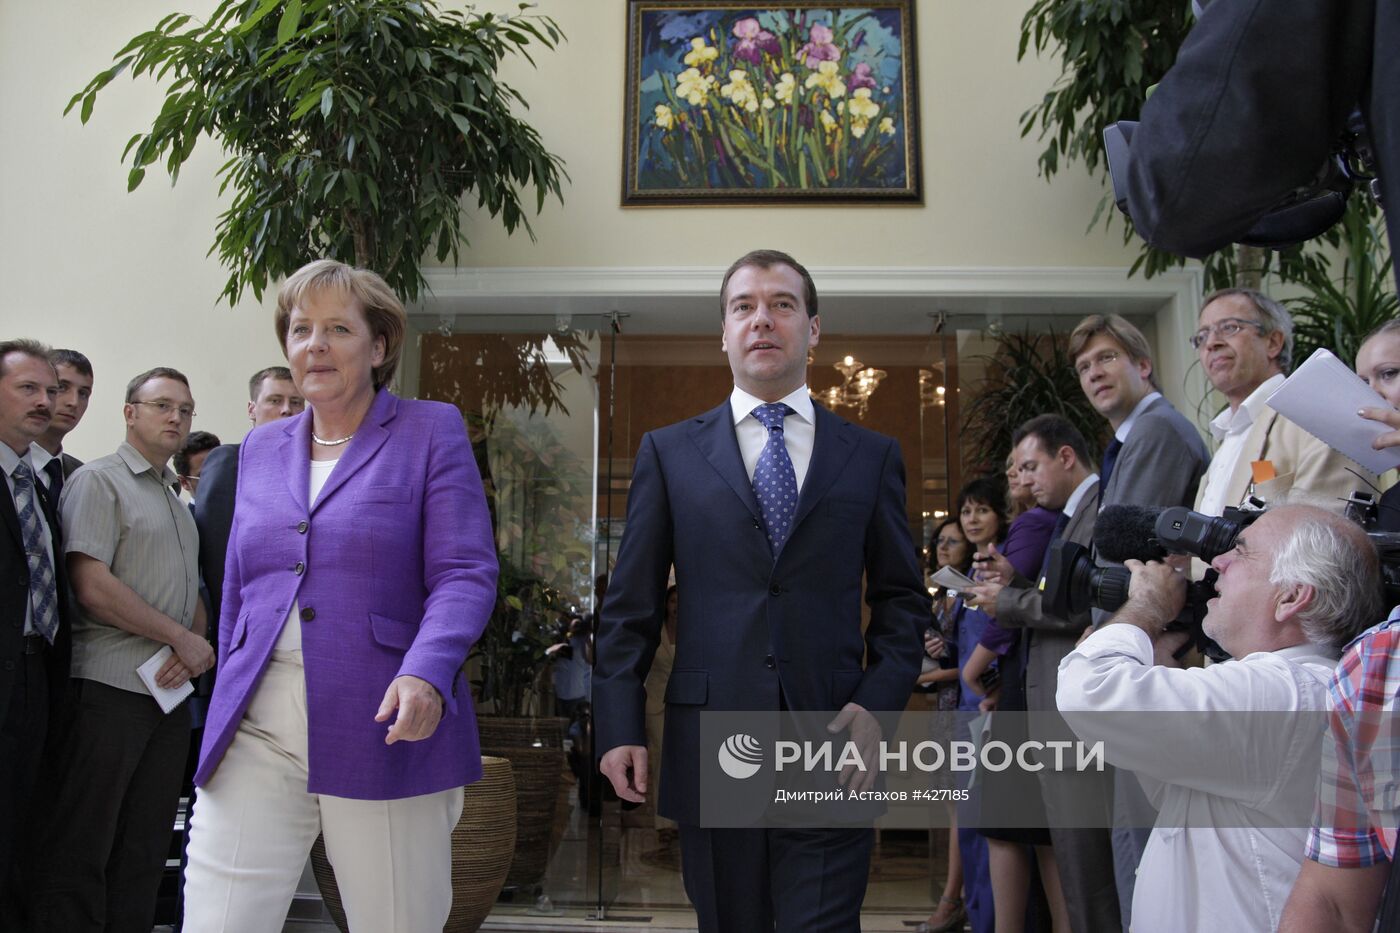 Д.Медведев провел встречу с А.Меркель в Сочи